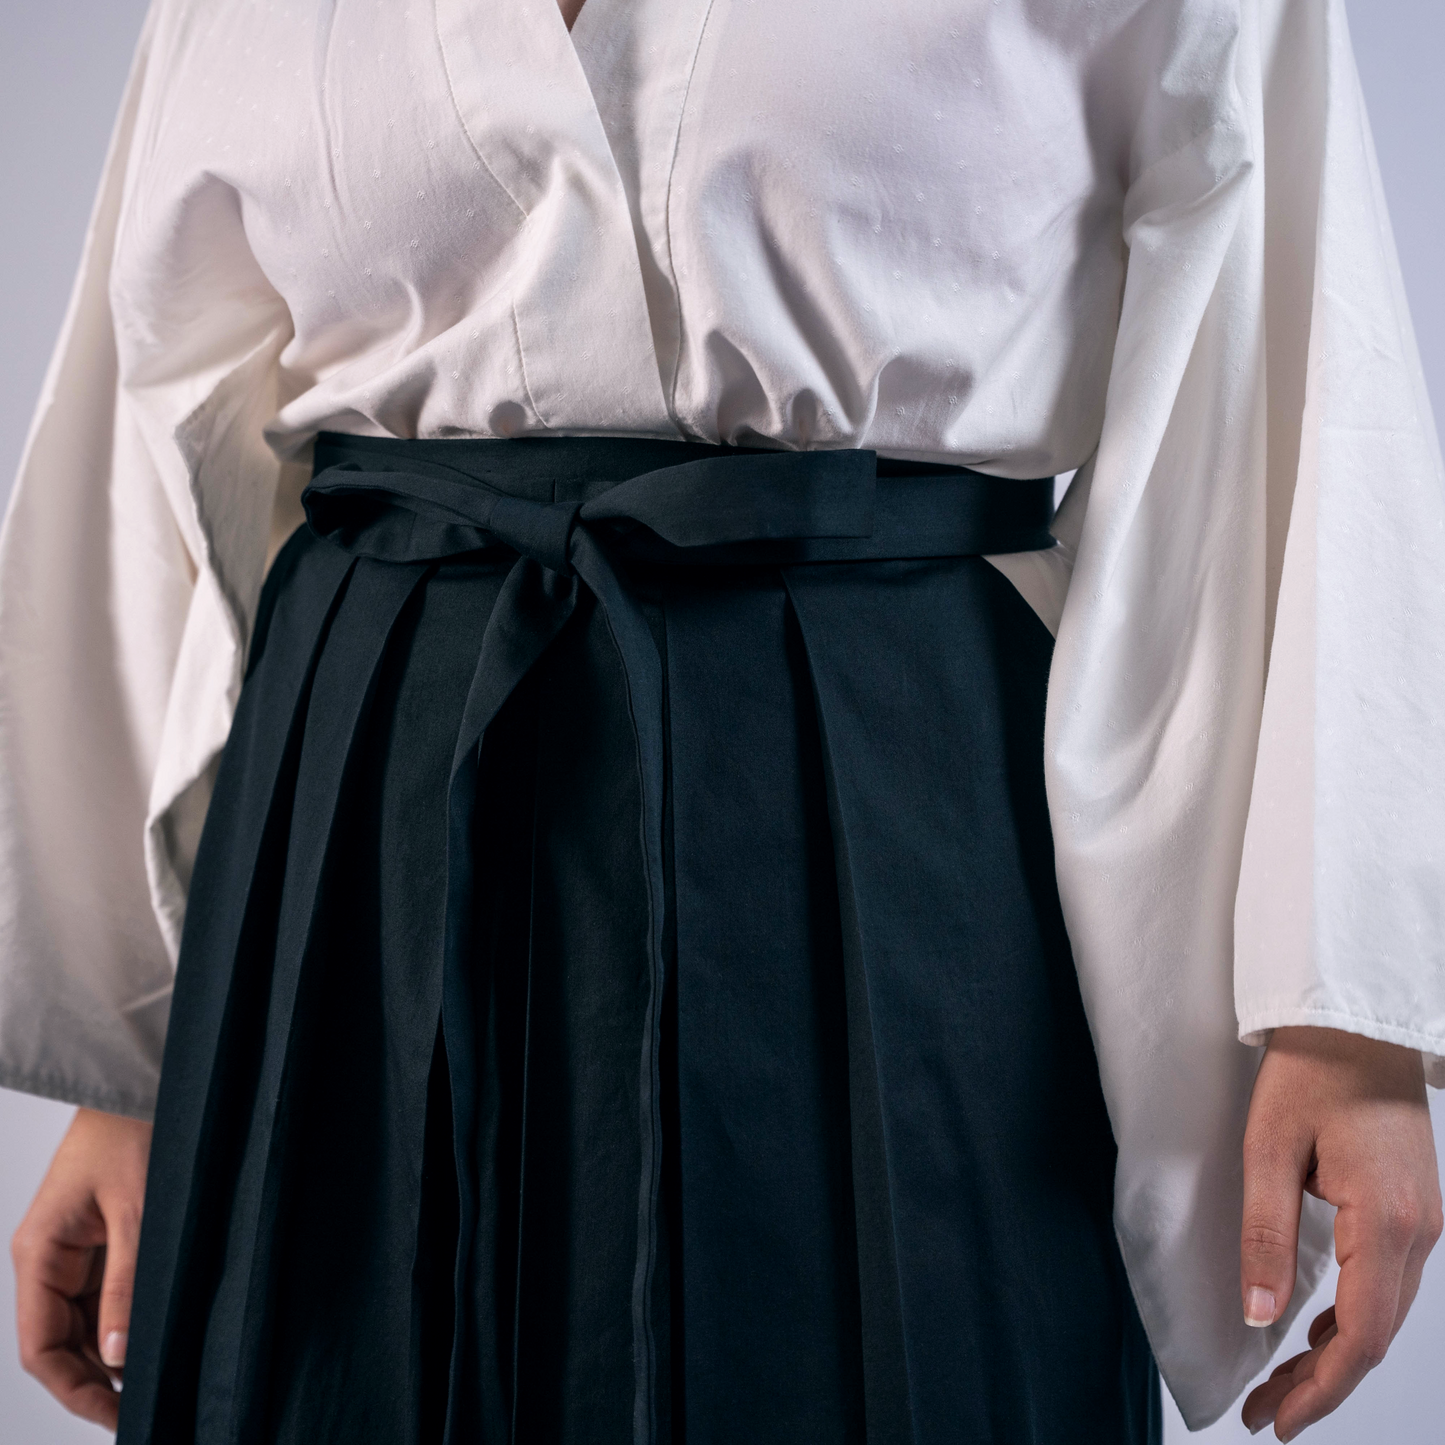 Hakama Skirt Costume Sewing Pattern/Downloadable PDF File